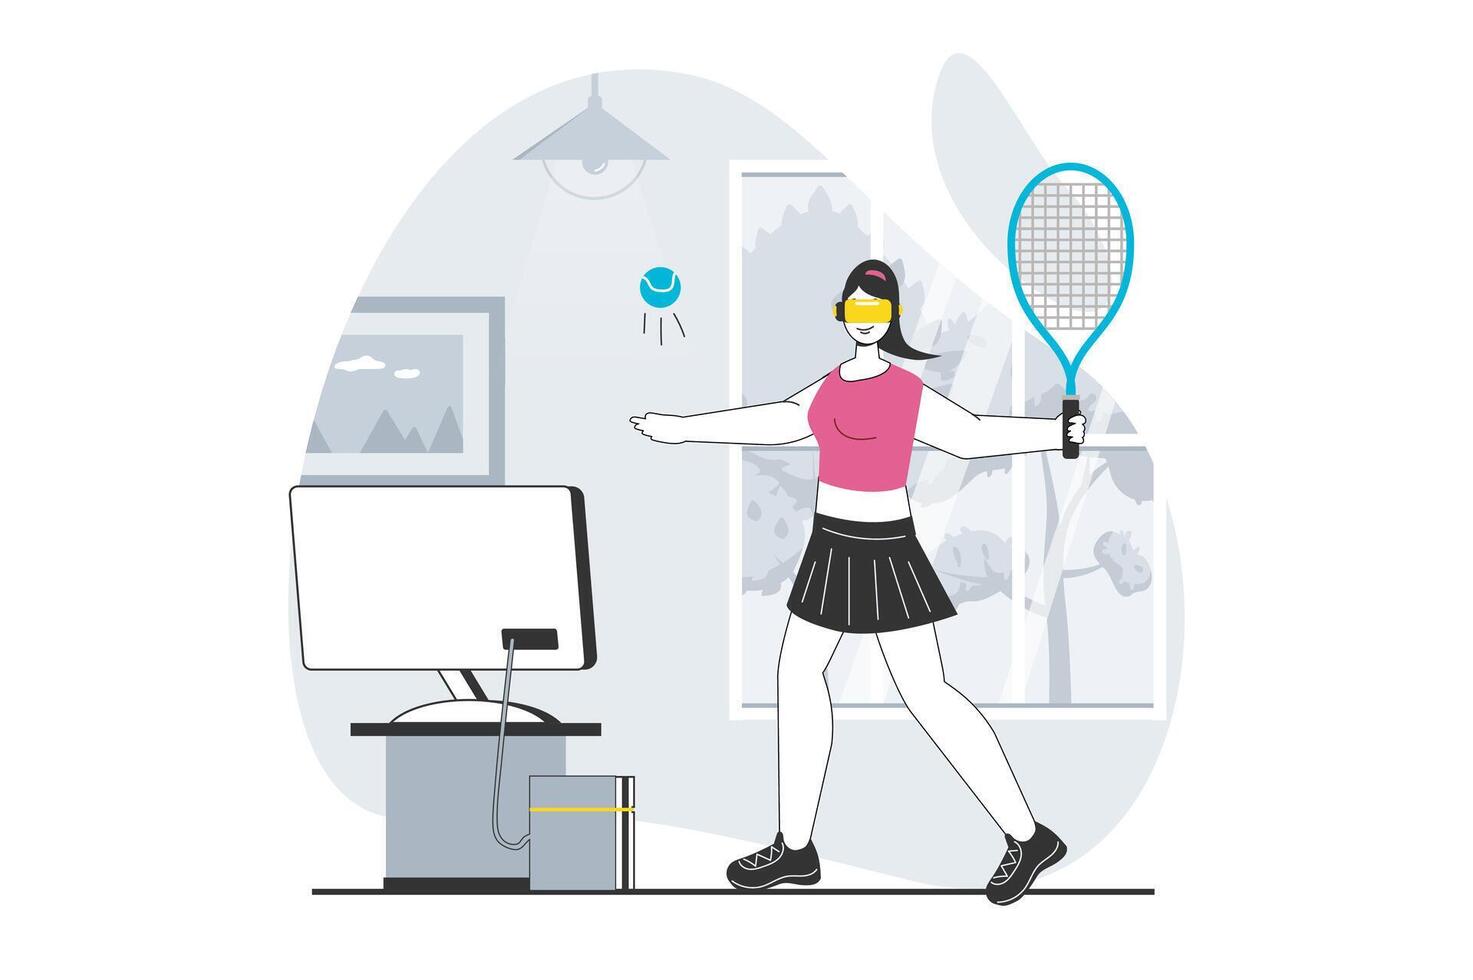 virtueel realiteit concept met mensen tafereel in vlak ontwerp voor web. vrouw in vr koptelefoon spelen tennis en opleiding voor cyber sport. vector illustratie voor sociaal media banier, afzet materiaal.